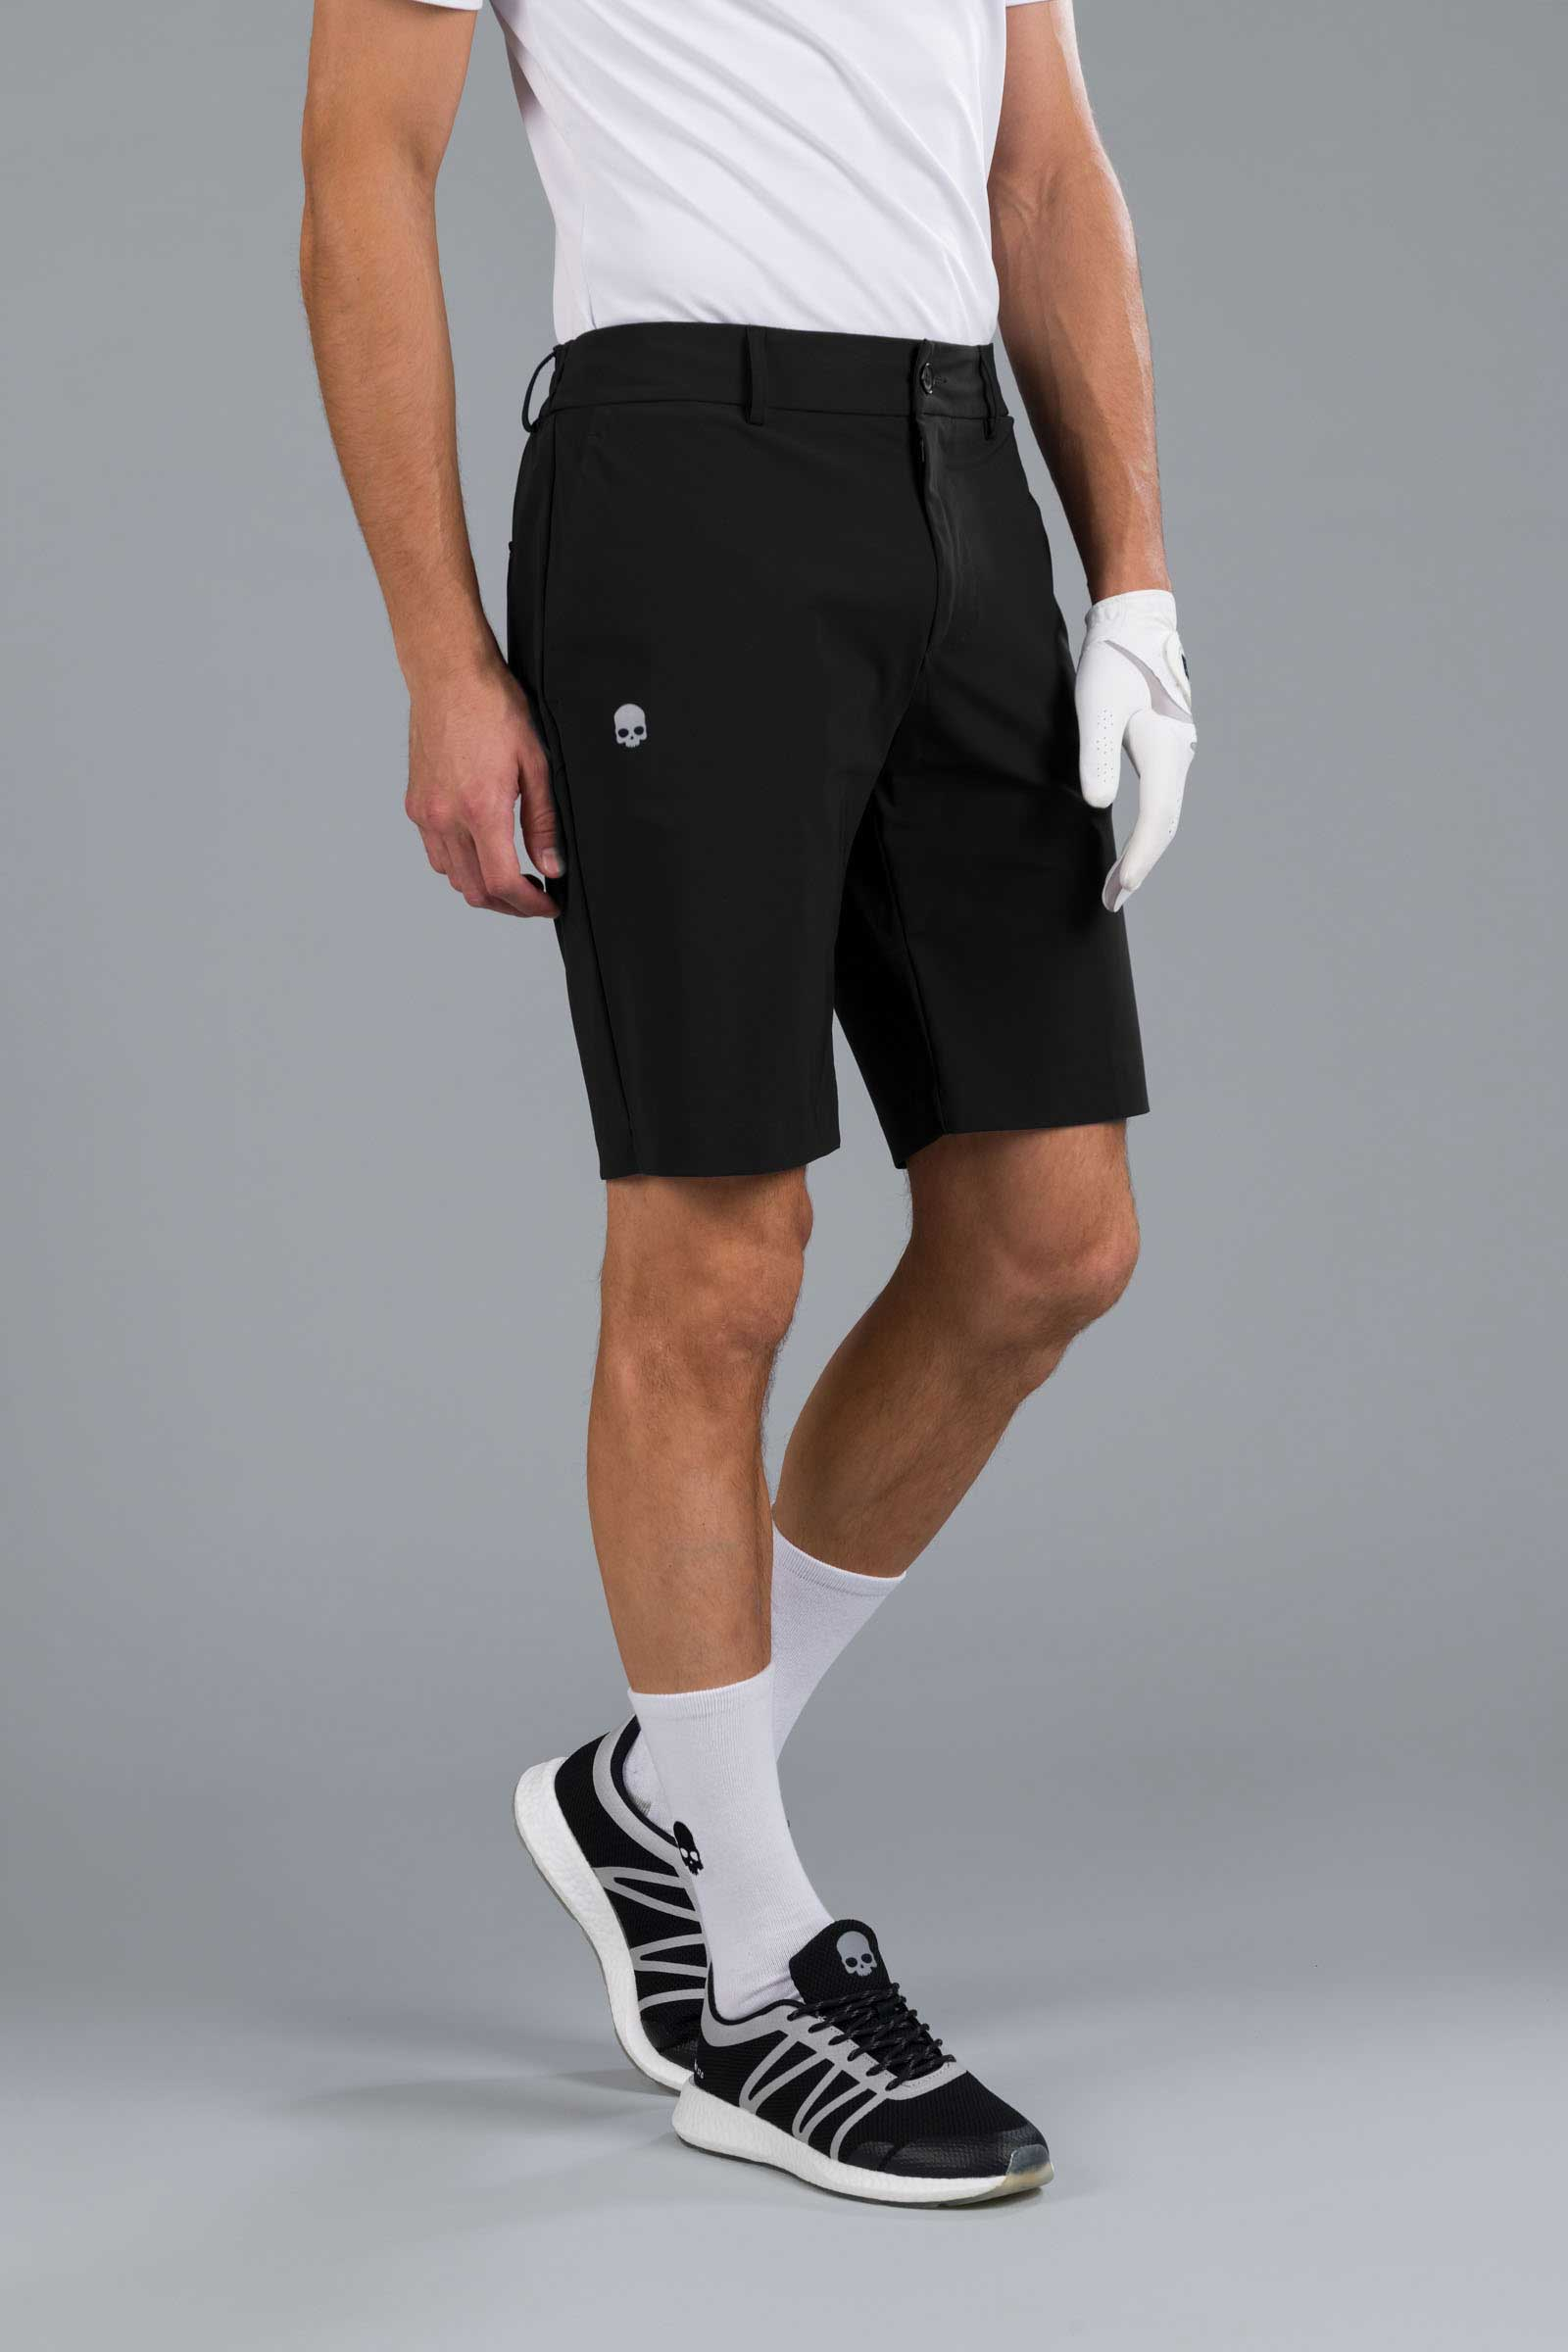 GOLF SHORTS - BLACK - Hydrogen - Luxury Sportwear